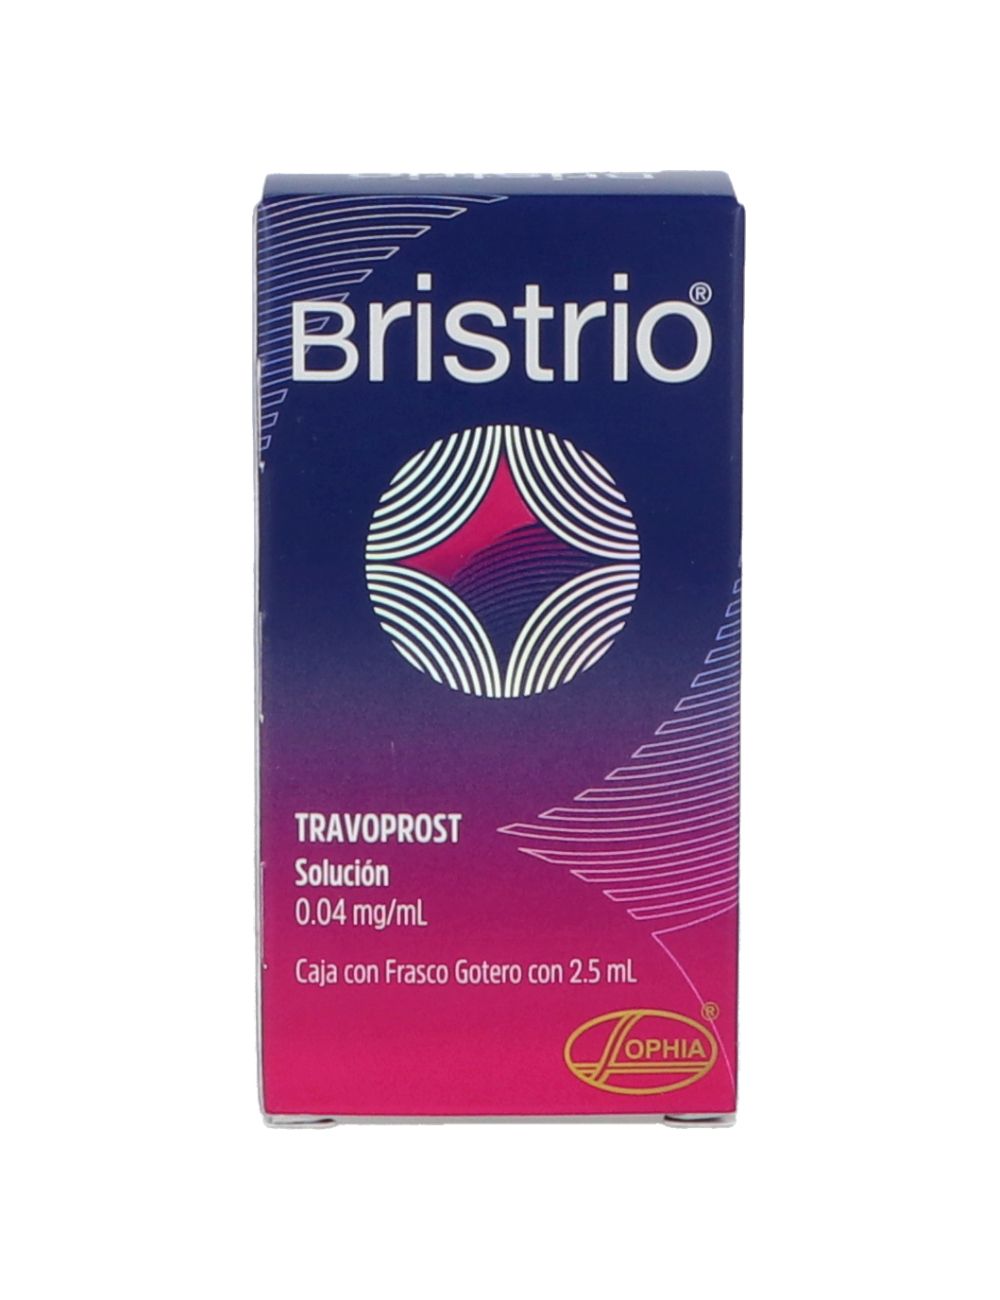 Bristrio 0.04mg/ml frasco gotero con 2.5 ml